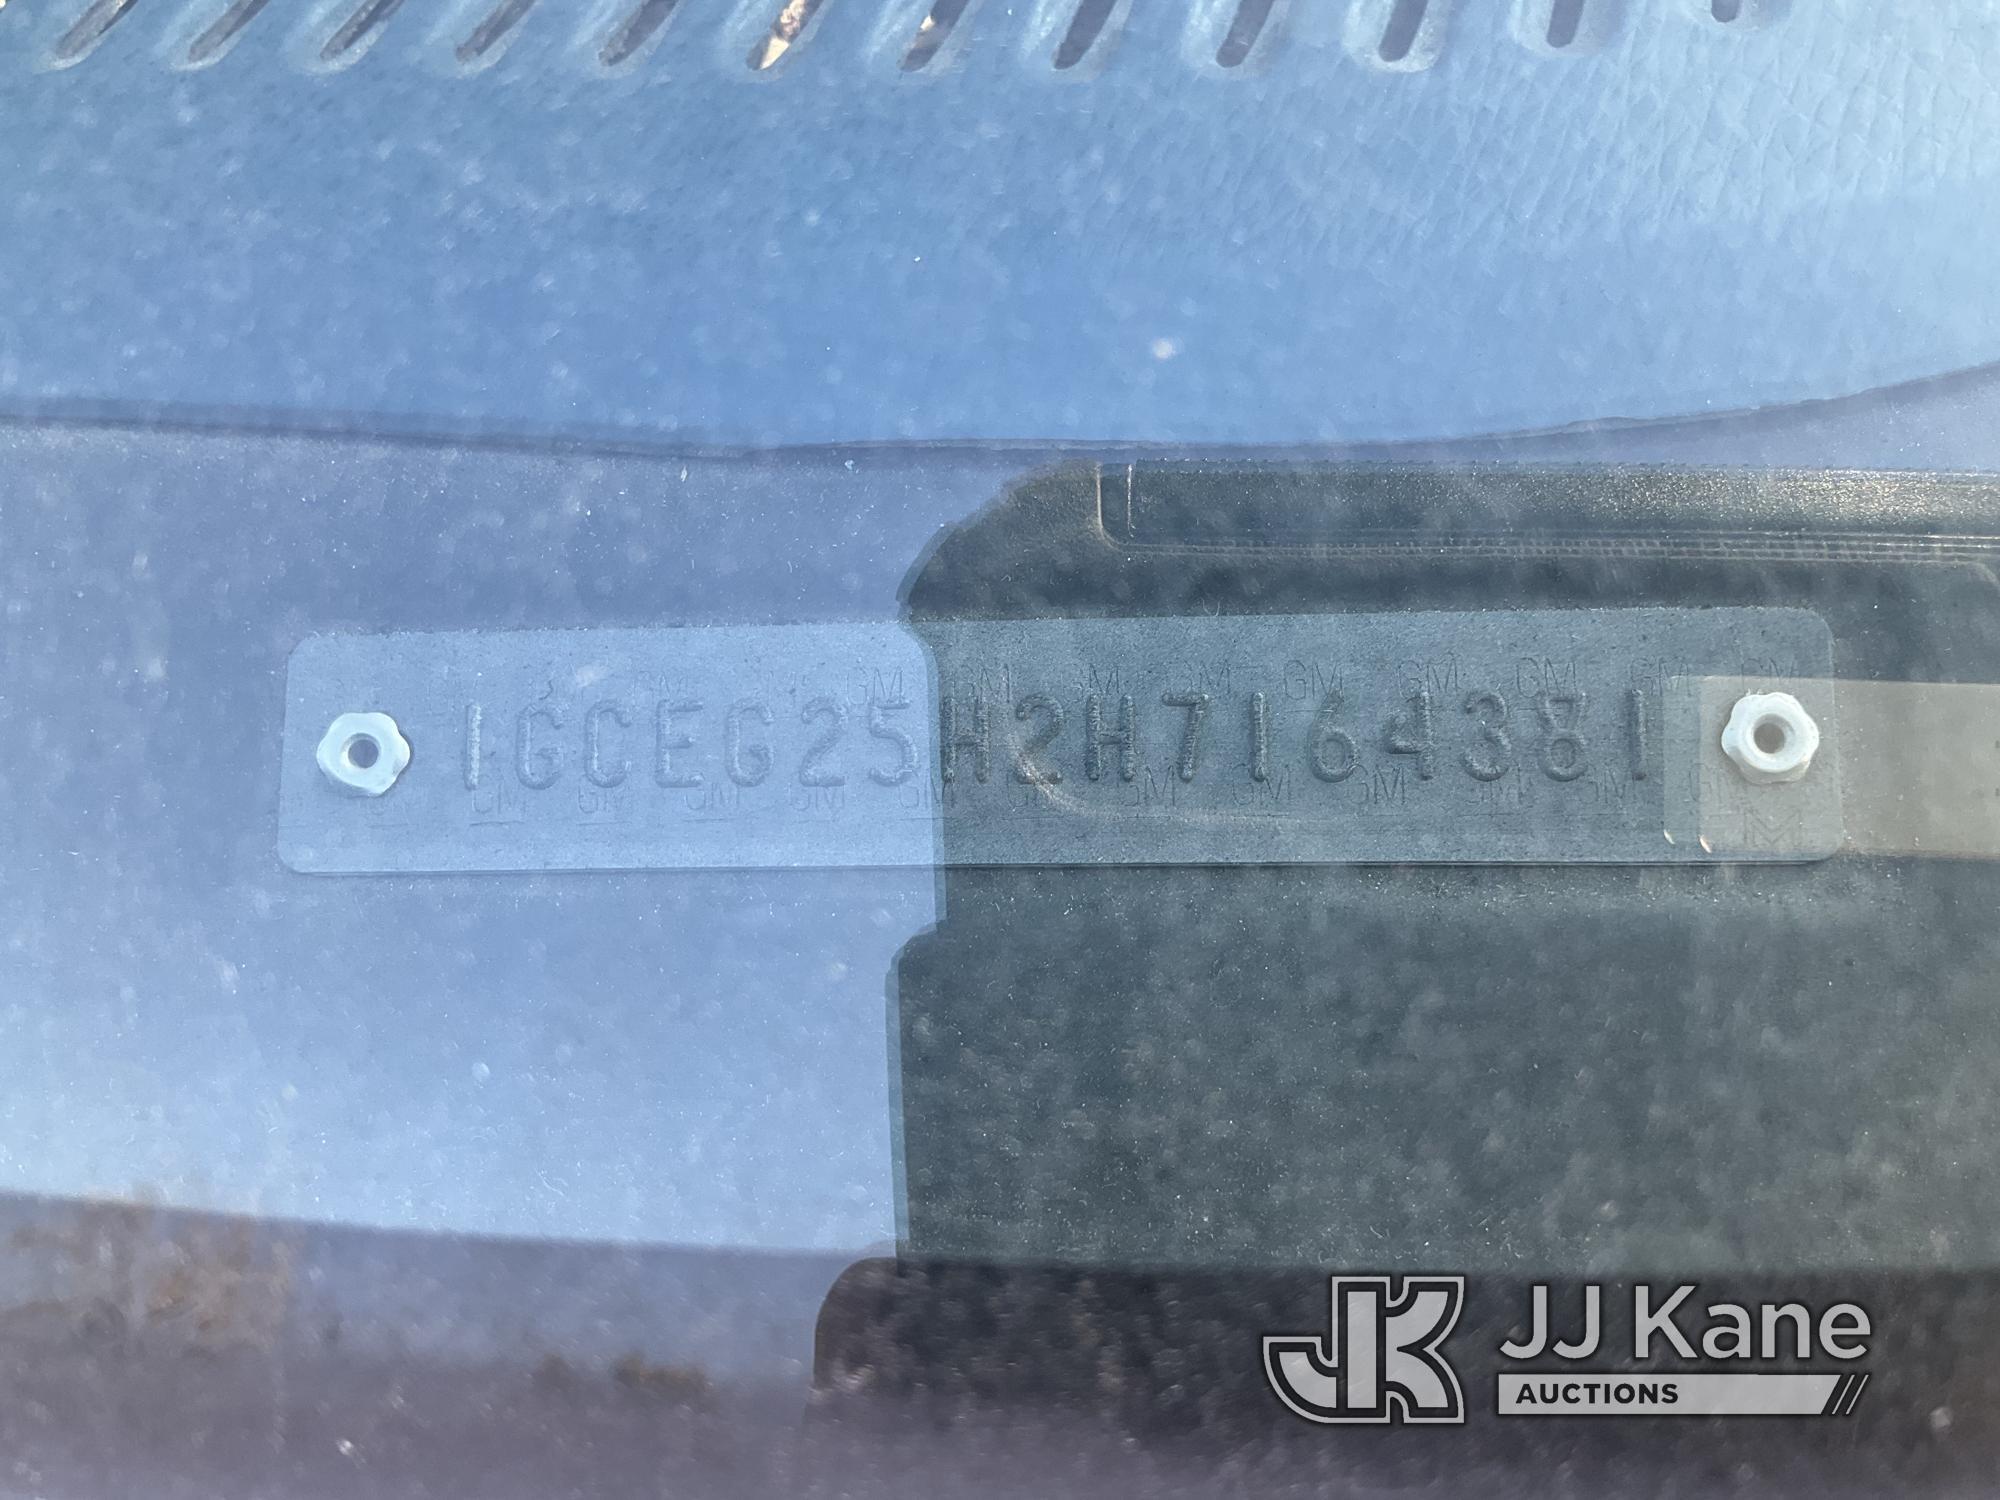 (Jurupa Valley, CA) 19087 Chevrolet G20 Cargo Van Not Running, Condition Unknown) (Missing Keys, Has